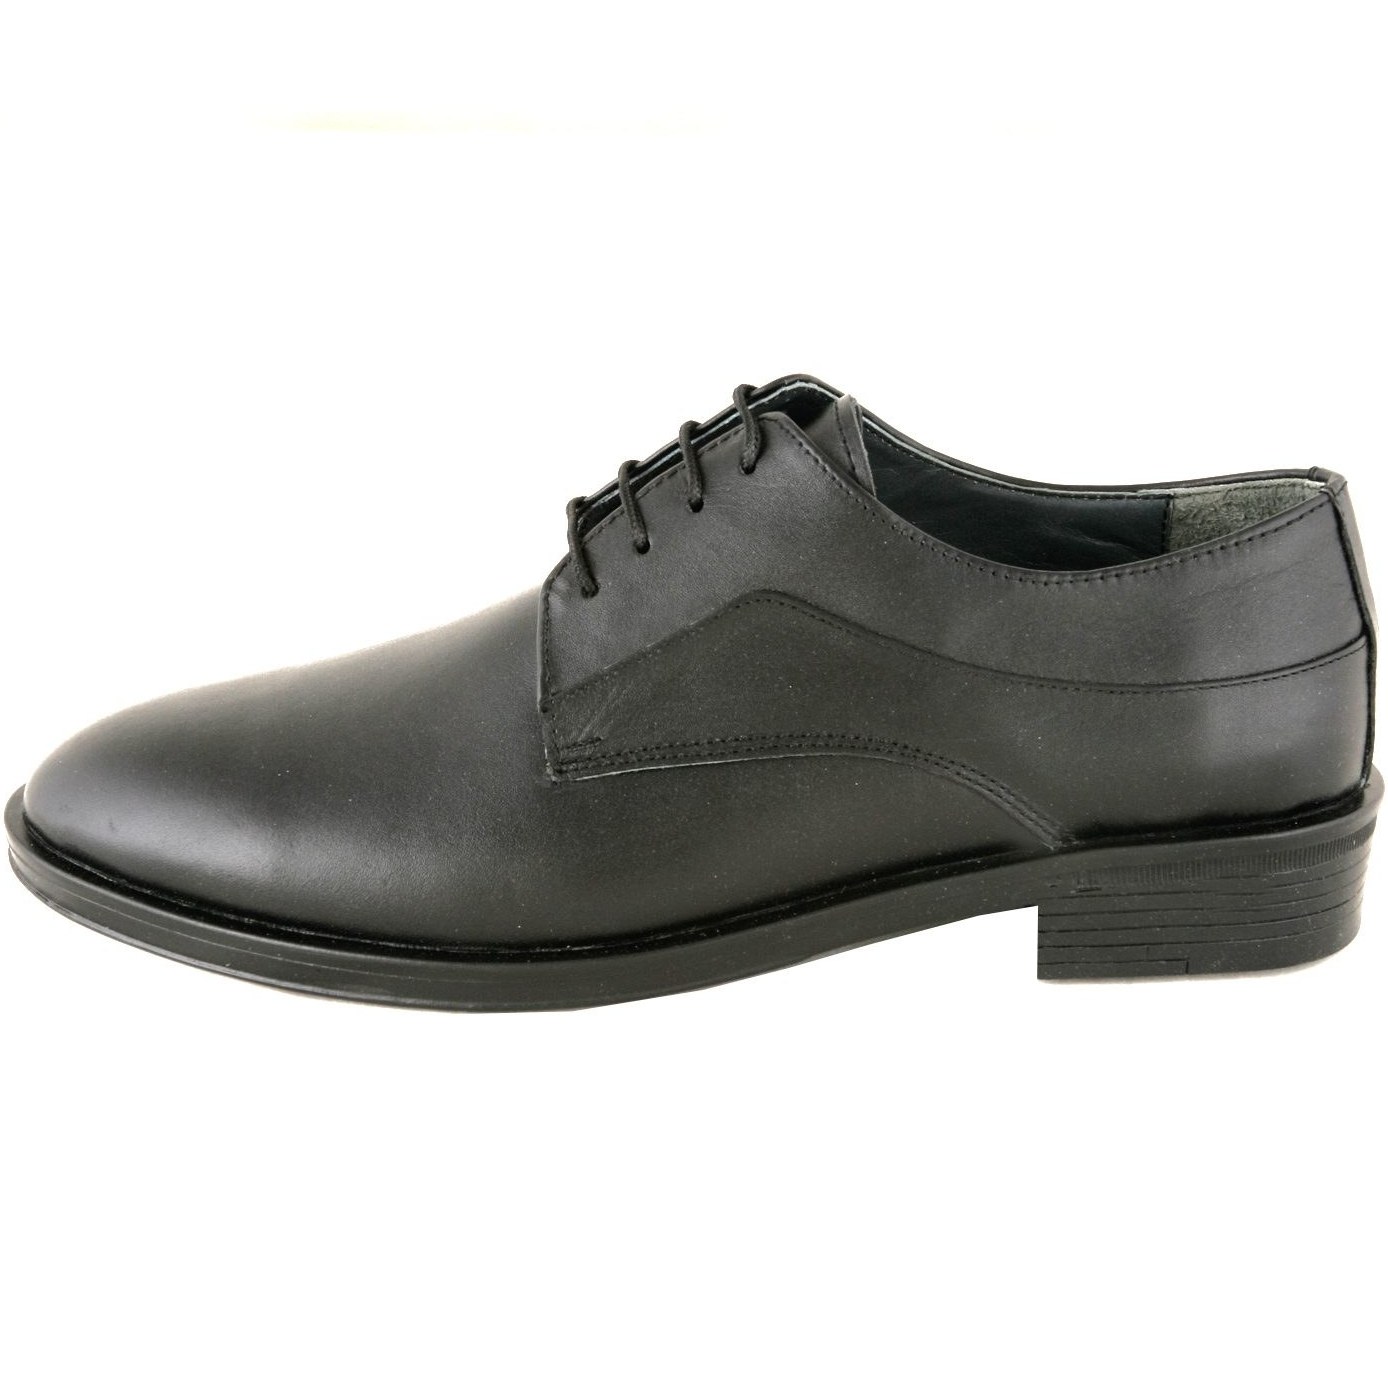 خرید و قیمت کفش مردانه چرم یلسان مدل توماس کد GN-557-msk | ترب